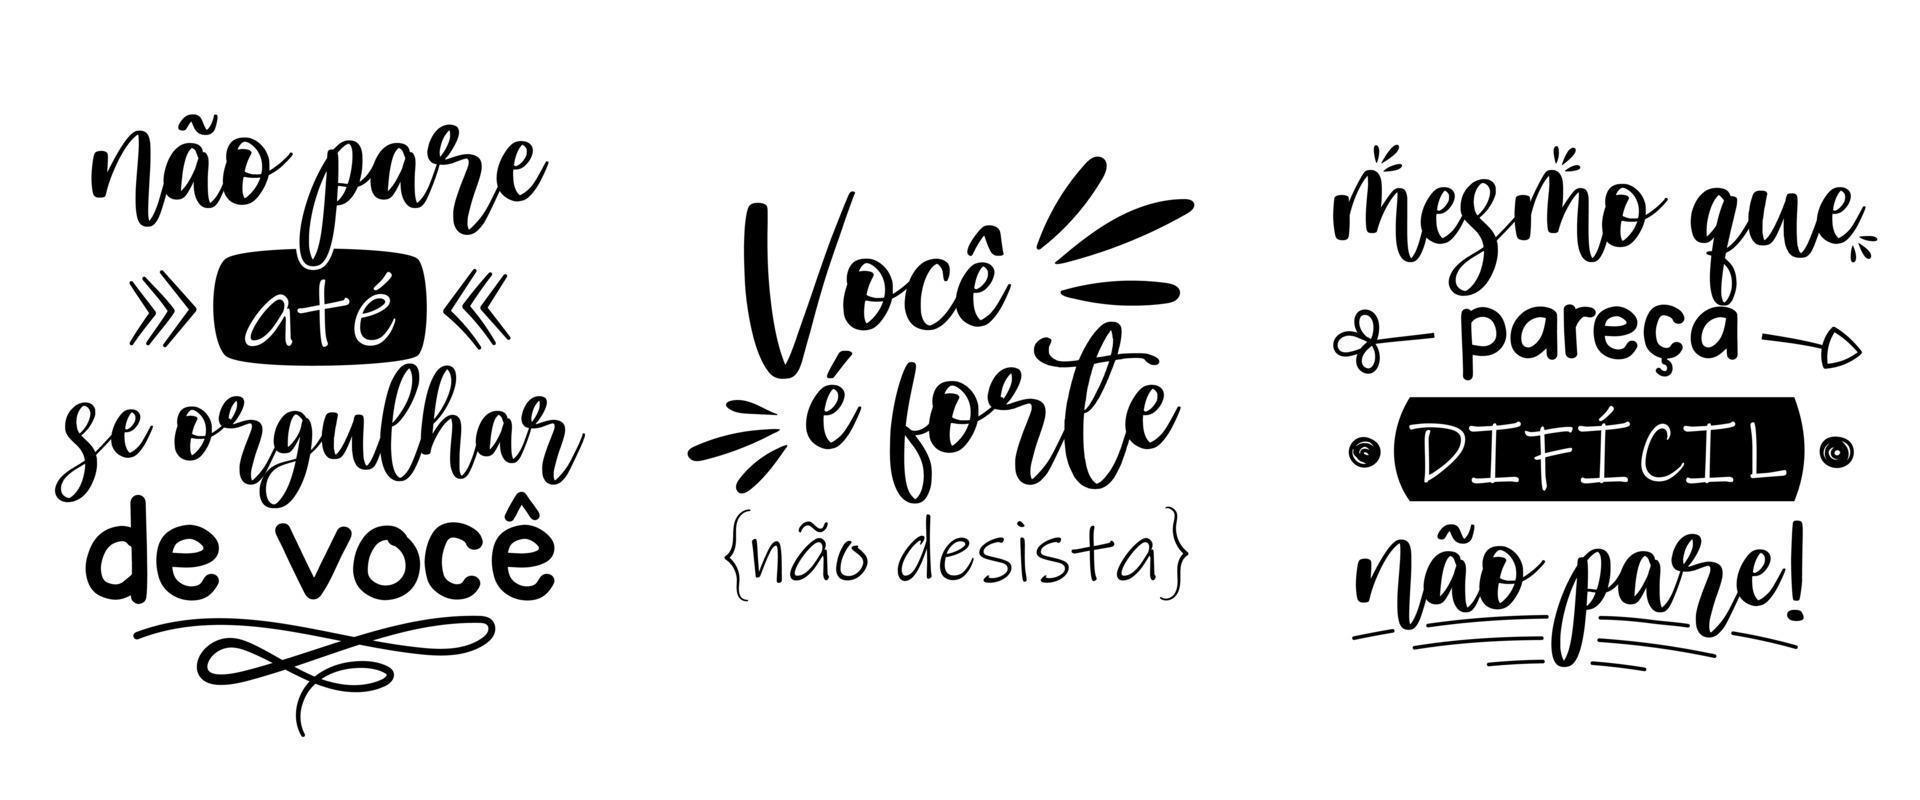 trois phrases de motivation en portugais brésilien. traduction - ne t'arrête pas tant que tu n'es pas fier de toi - tu es fort, n'abandonne pas - même si cela semble difficile, ne t'arrête pas. vecteur